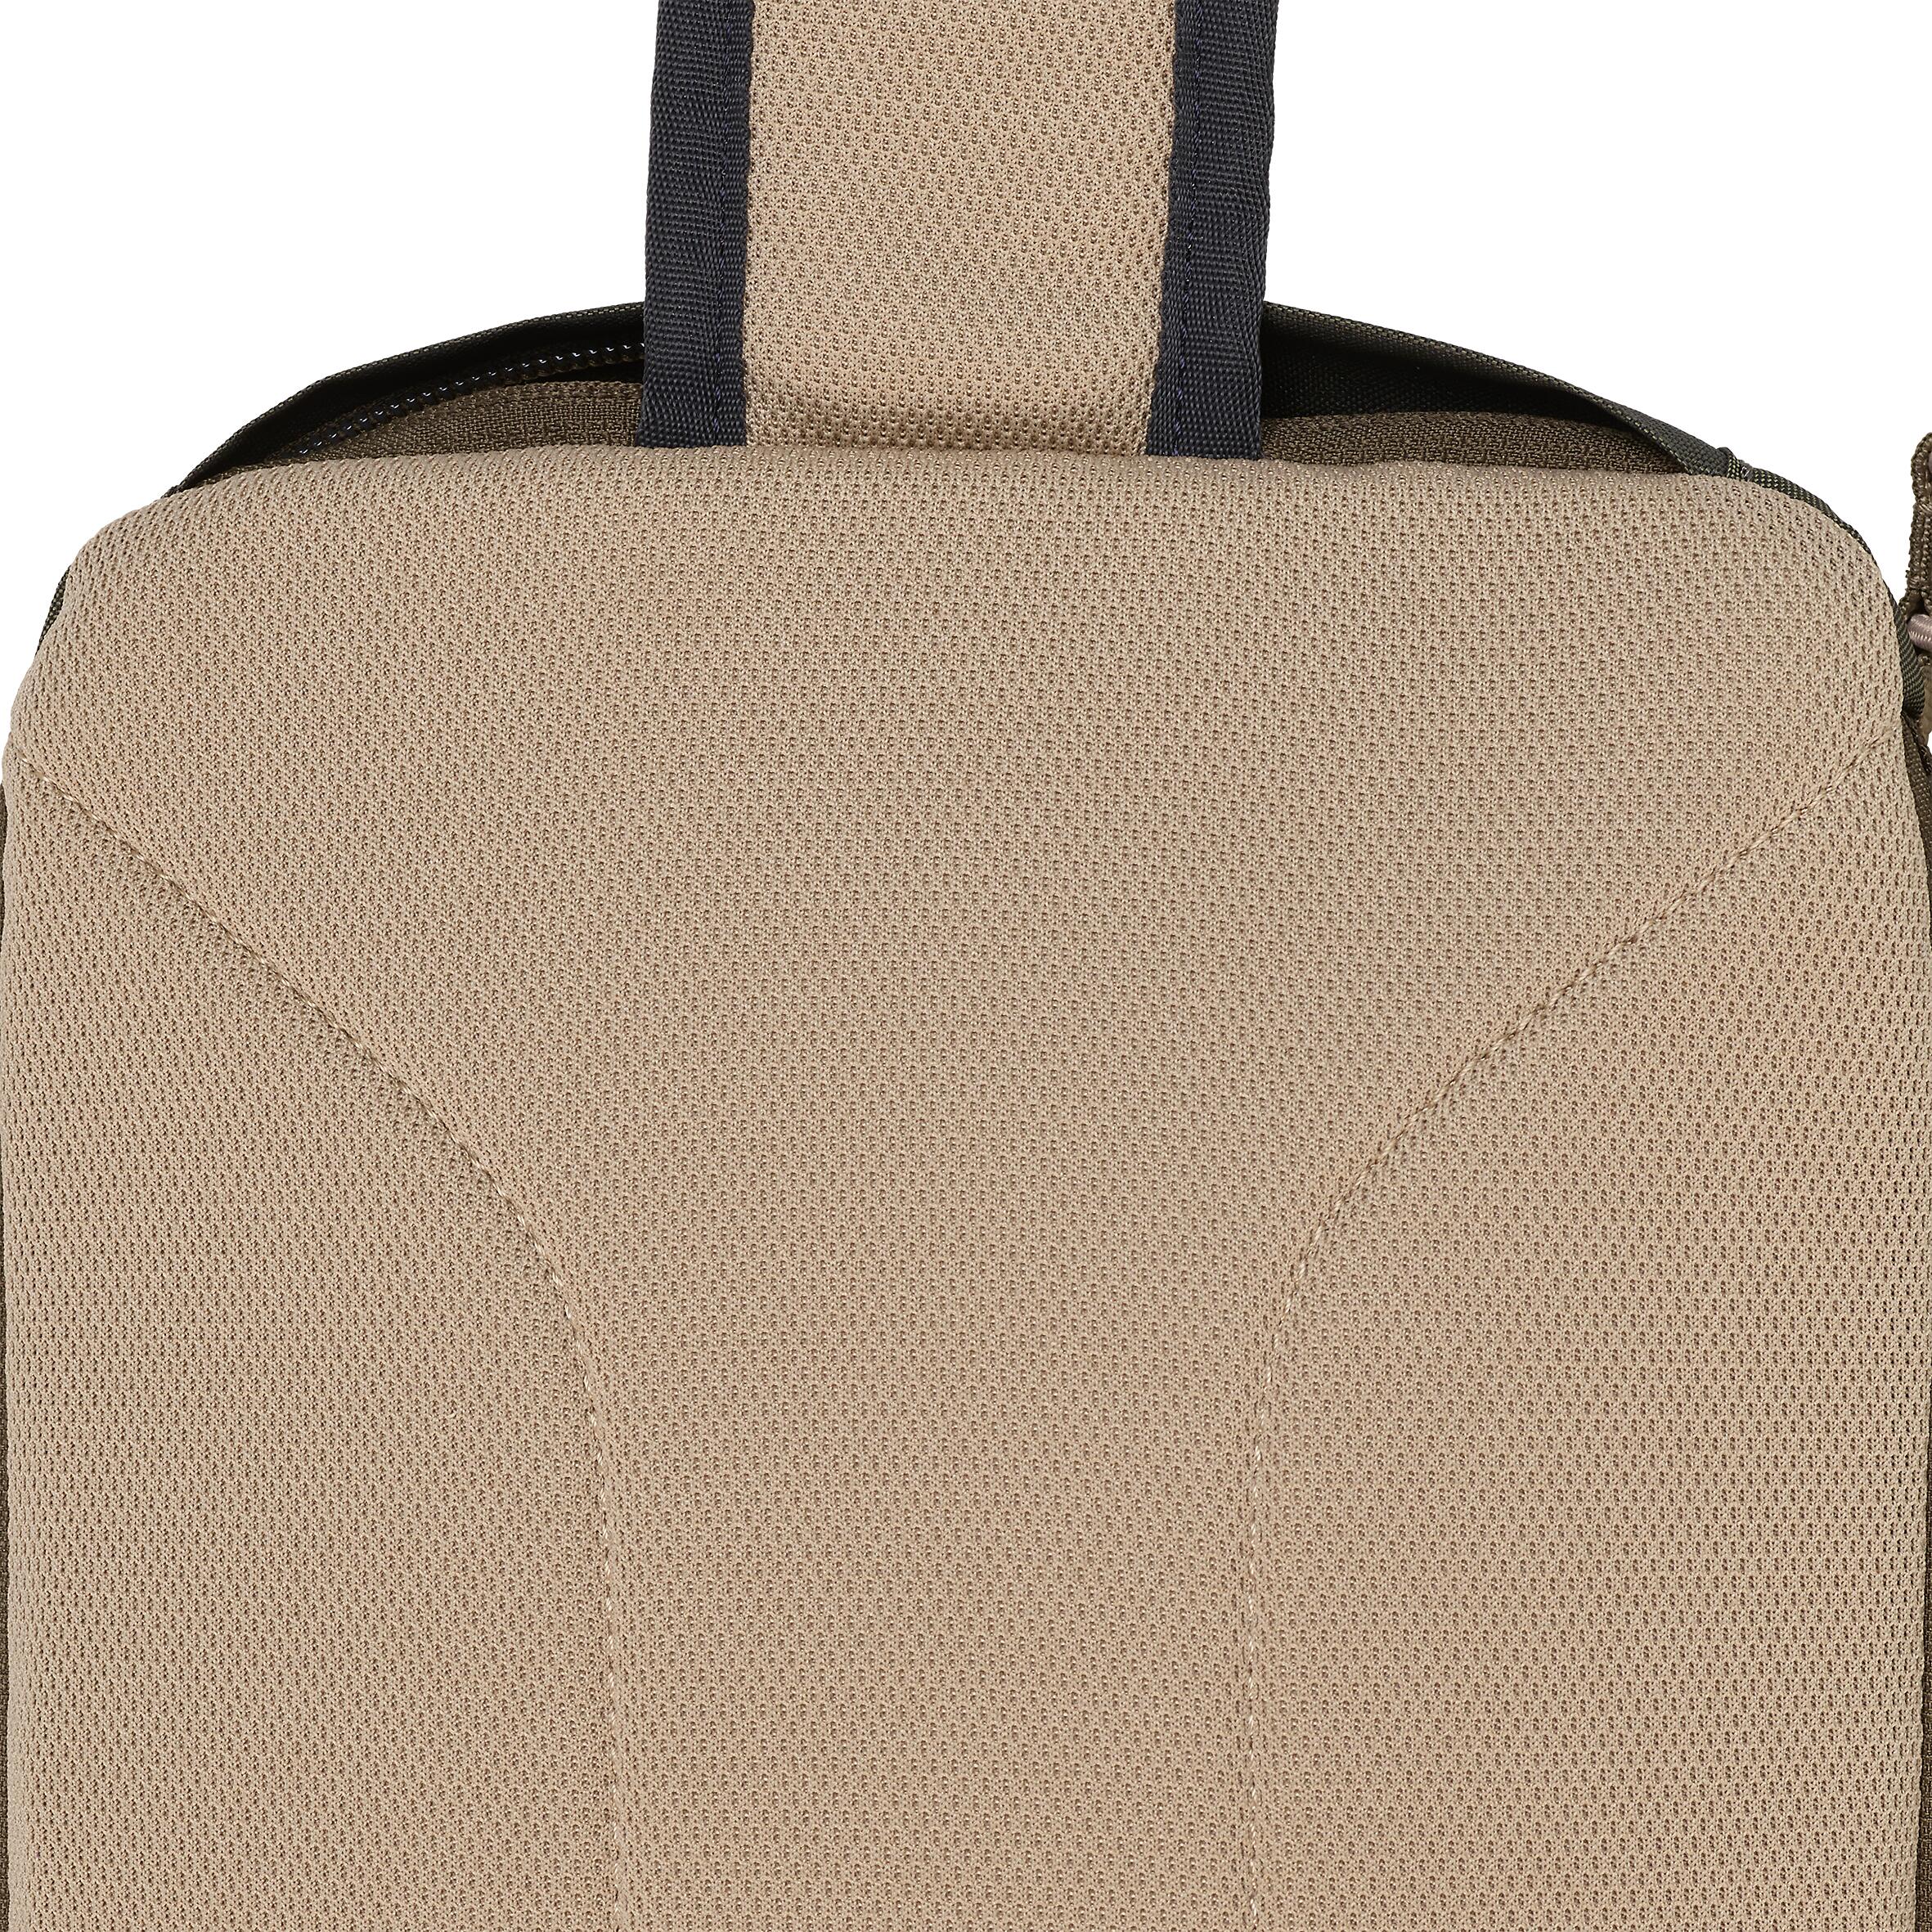 Fishing 9 L shoulder bag - Khaki 100 sling bag 8/8